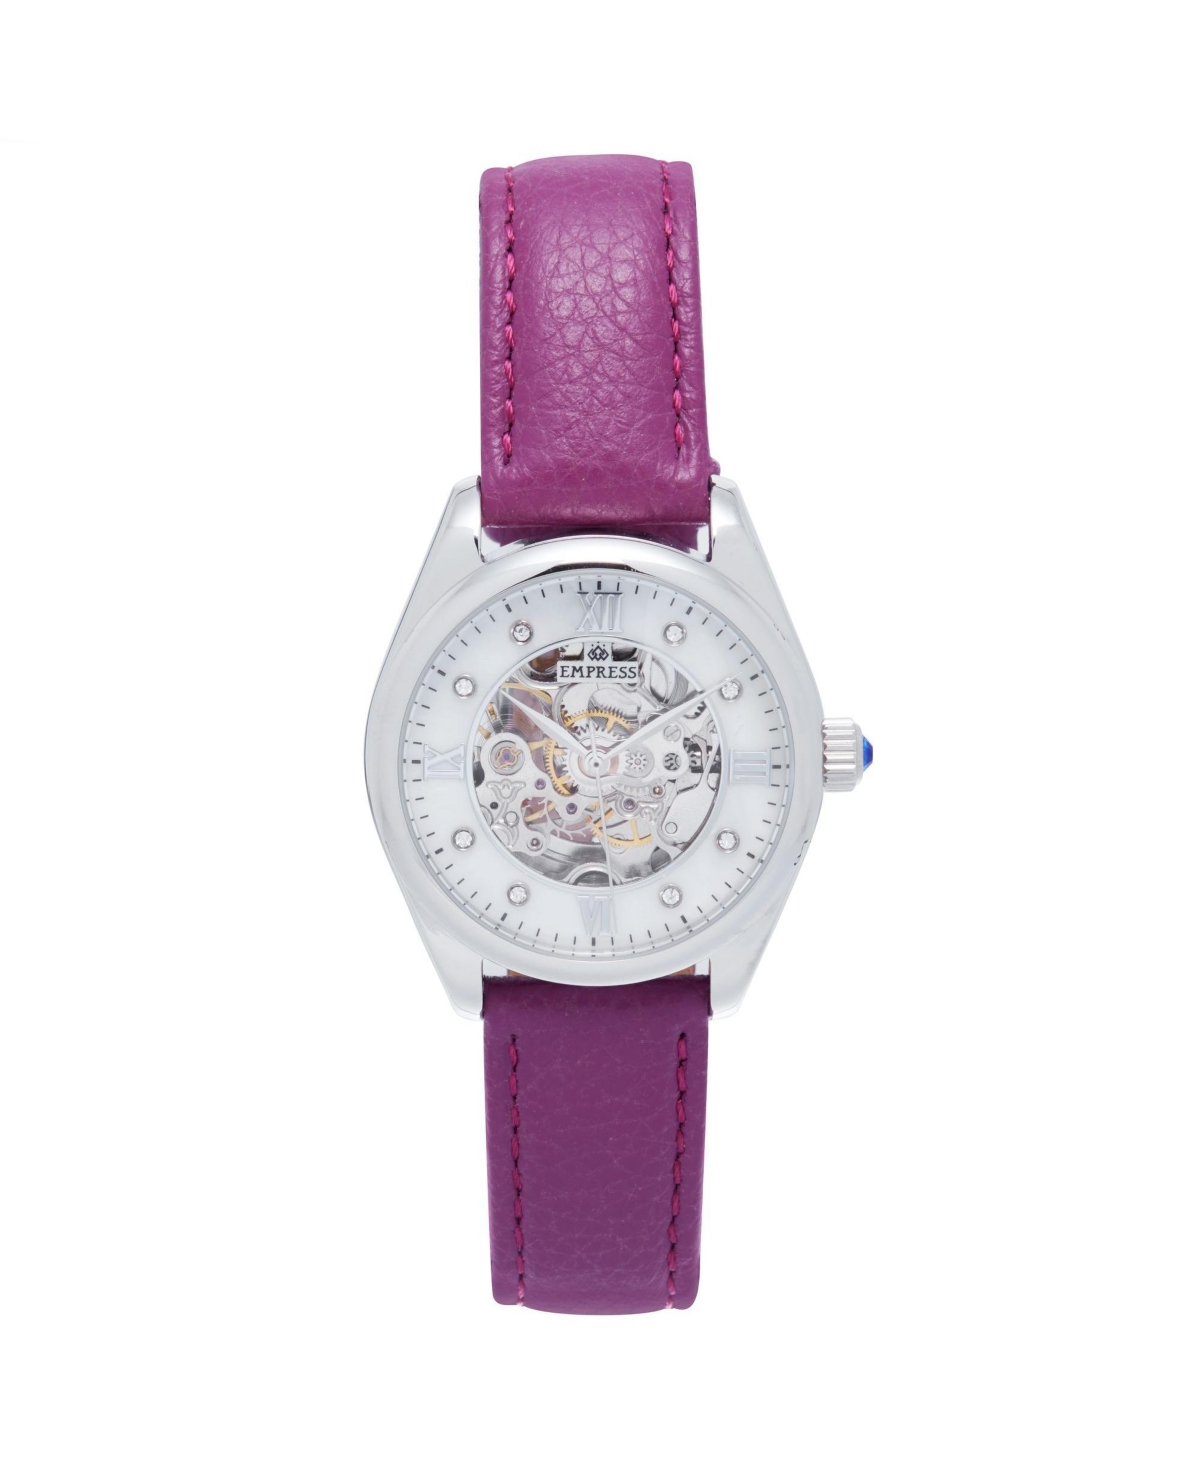 Women Magnolia Leather Watch - Purple/Silver, 37mm - Purple/silver